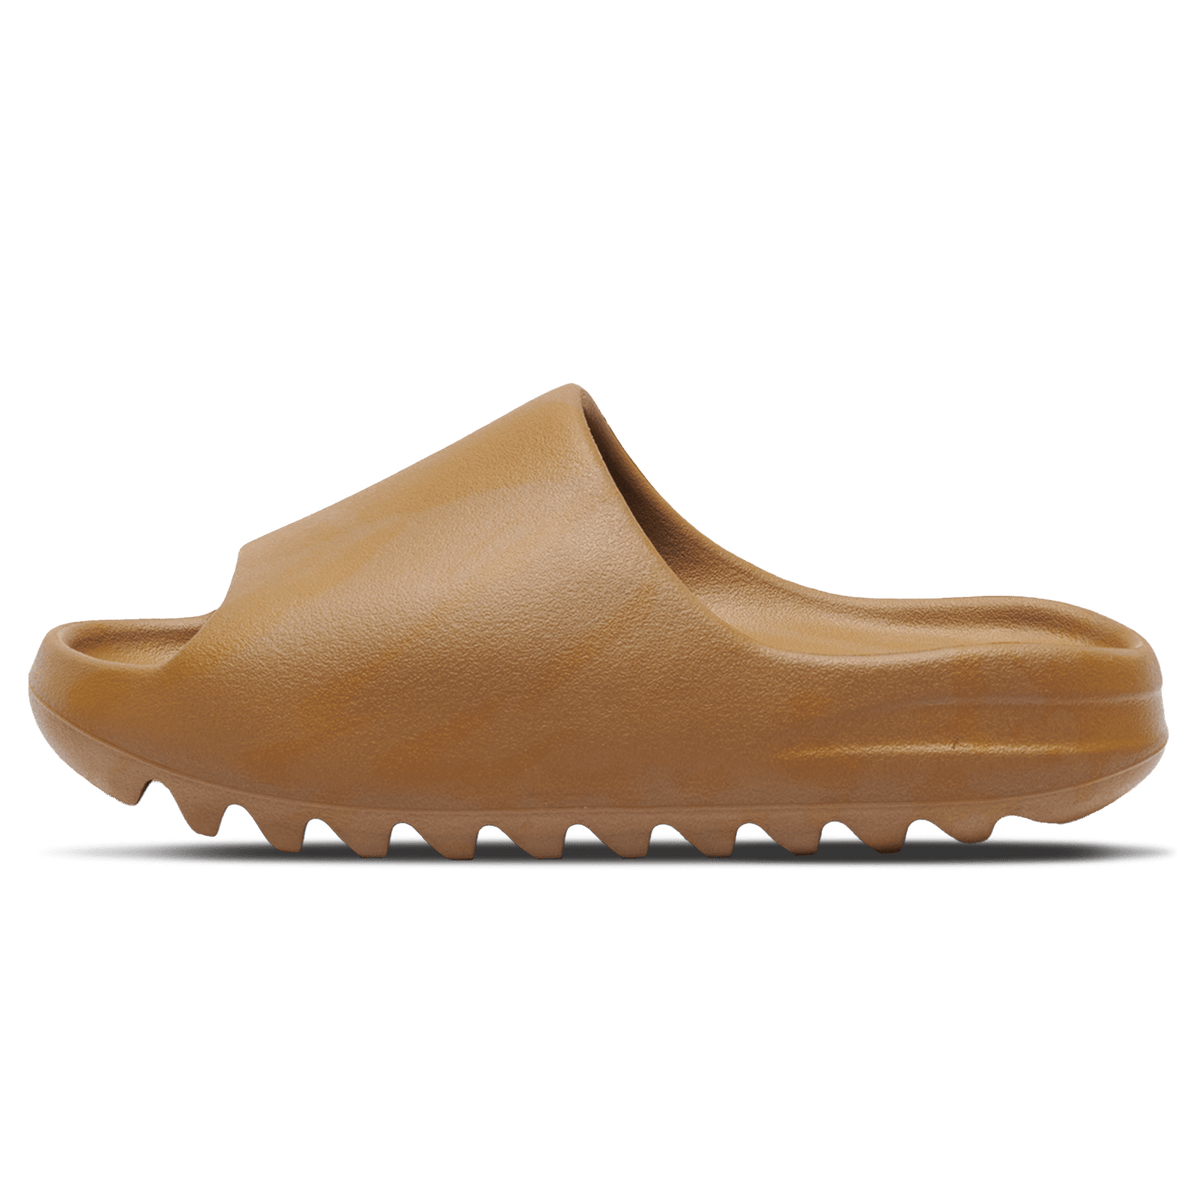 adidas Yeezy indigo Slides 'Ochre' - UrlfreezeShops